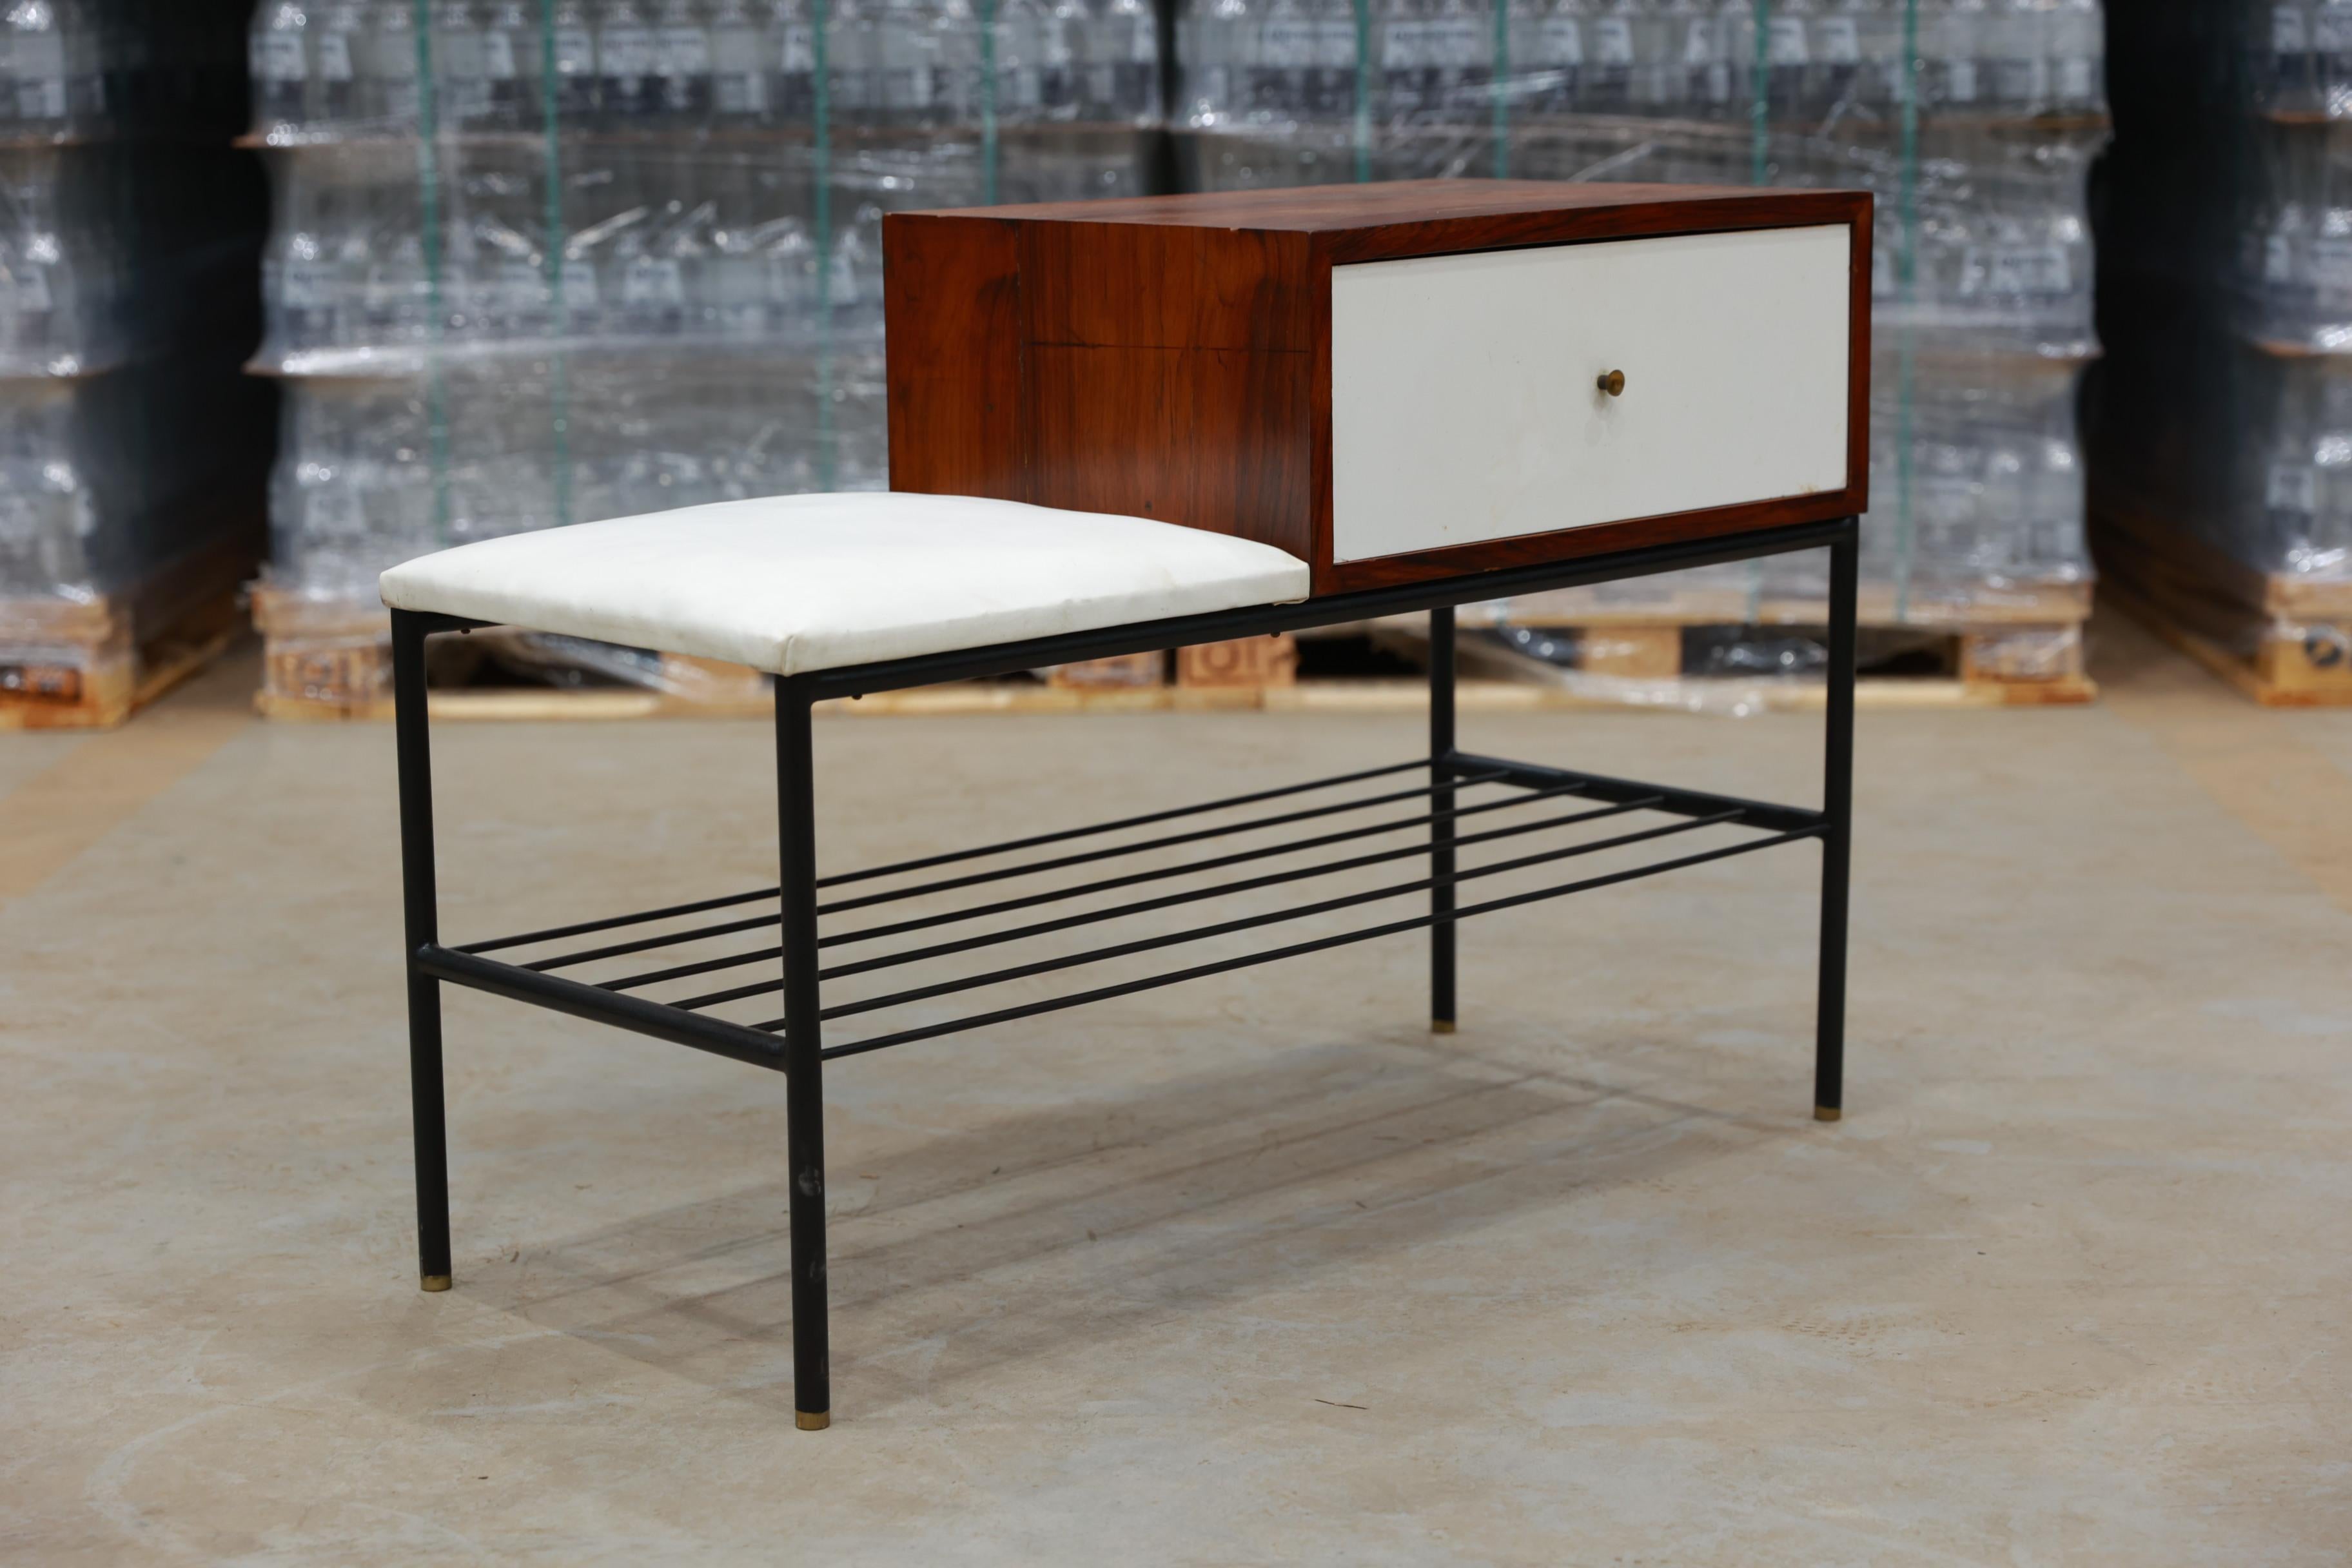 Disponible dès aujourd'hui, avec livraison gratuite aux États-Unis, cette superbe table téléphonique moderne brésilienne en bois dur et en acier, conçue par Geraldo de Barros au Brésil dans les années 50, est magnifique !

Cette table a été conçue à